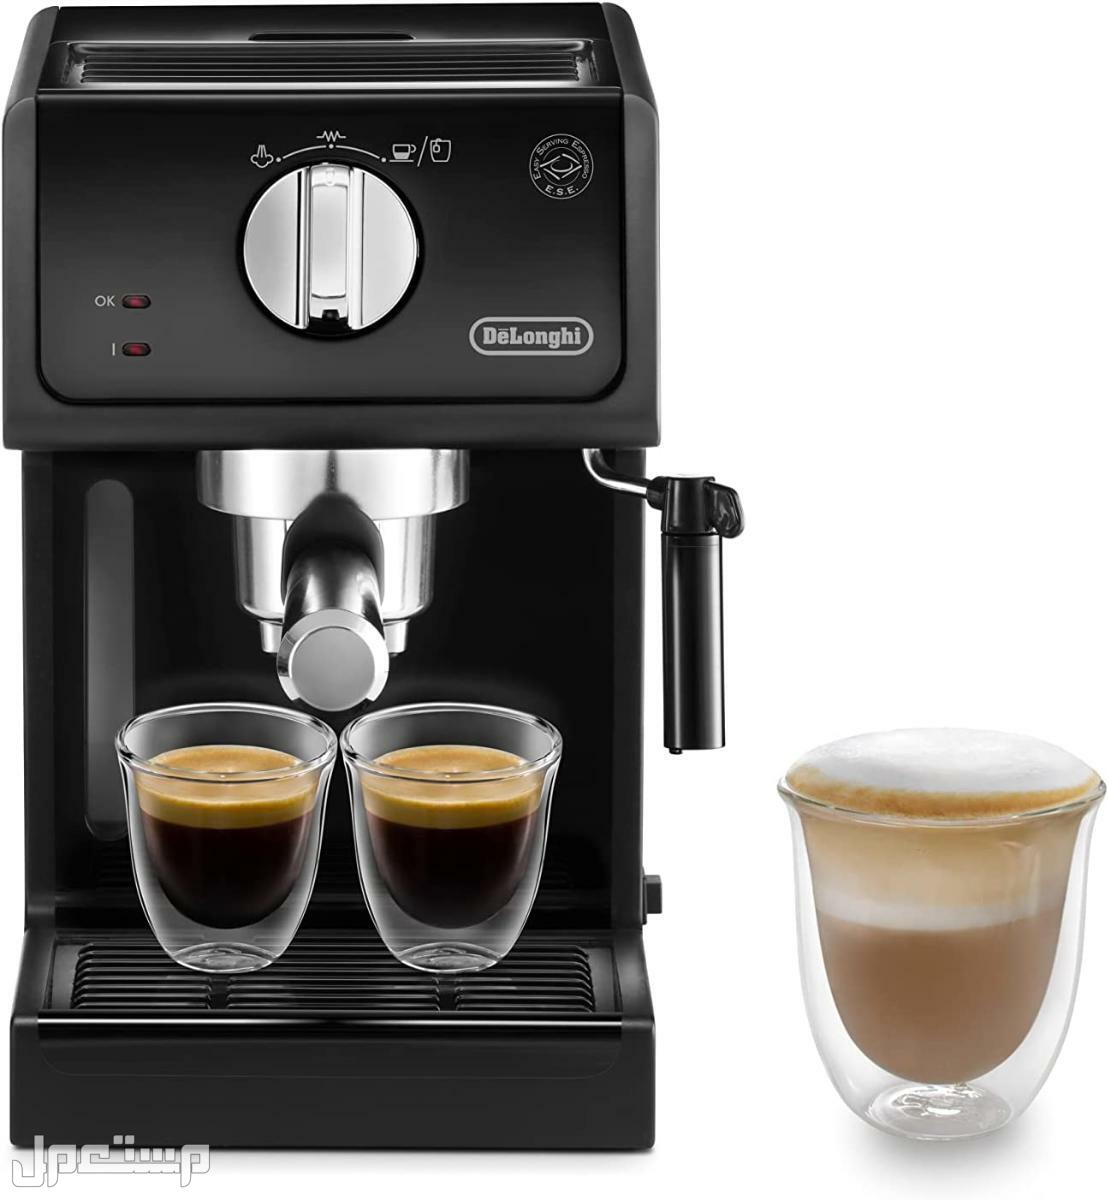 عيوب ومميزات ومواصفات وسعر ماكينة قهوة ديلونجى ديديكا في فلسطين لماذا عليك شراء ماكينة قهوة ديلونجي ديديكا ؟